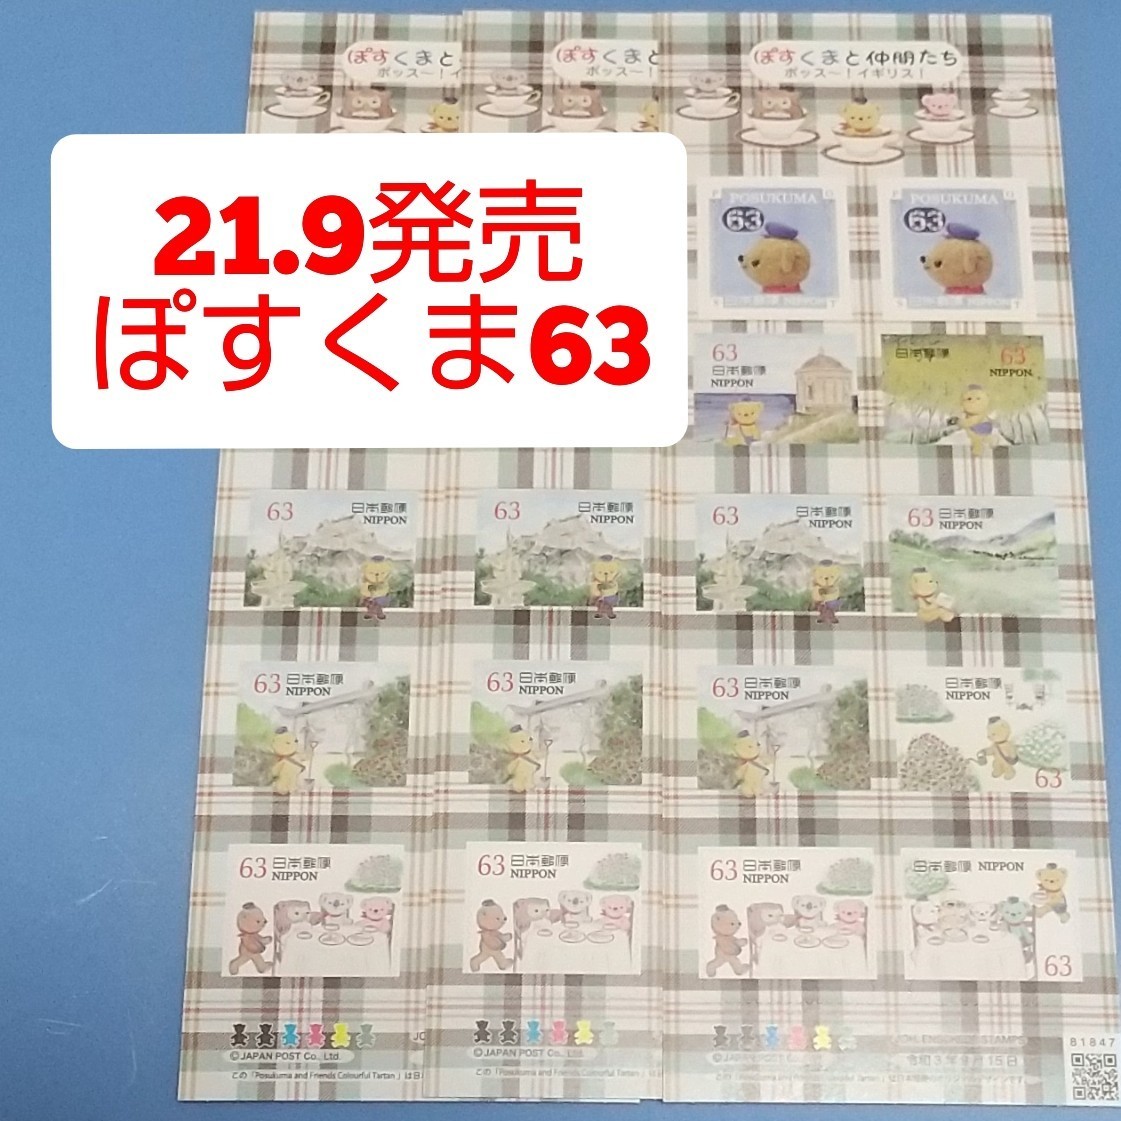 21.9発売 ぽすくまと仲間たち 63円 シール切手 3シート 1890円分  シール式切手 記念切手